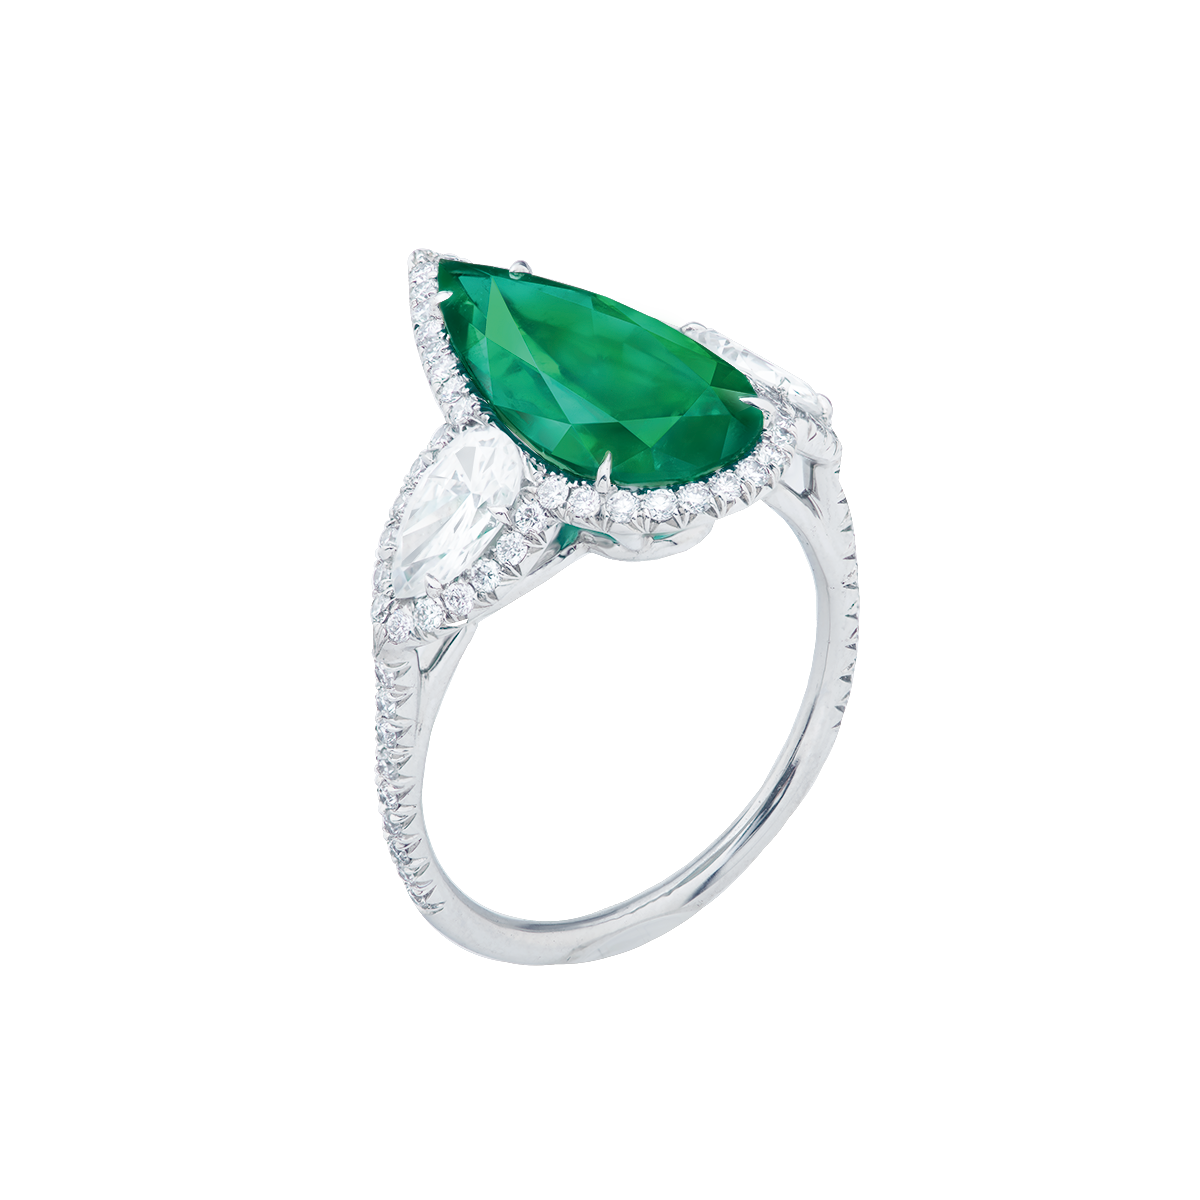 2.61克拉 哥倫比亞天然無浸油祖母綠鑽戒
Colombian Emerald and 
Diamond Ring